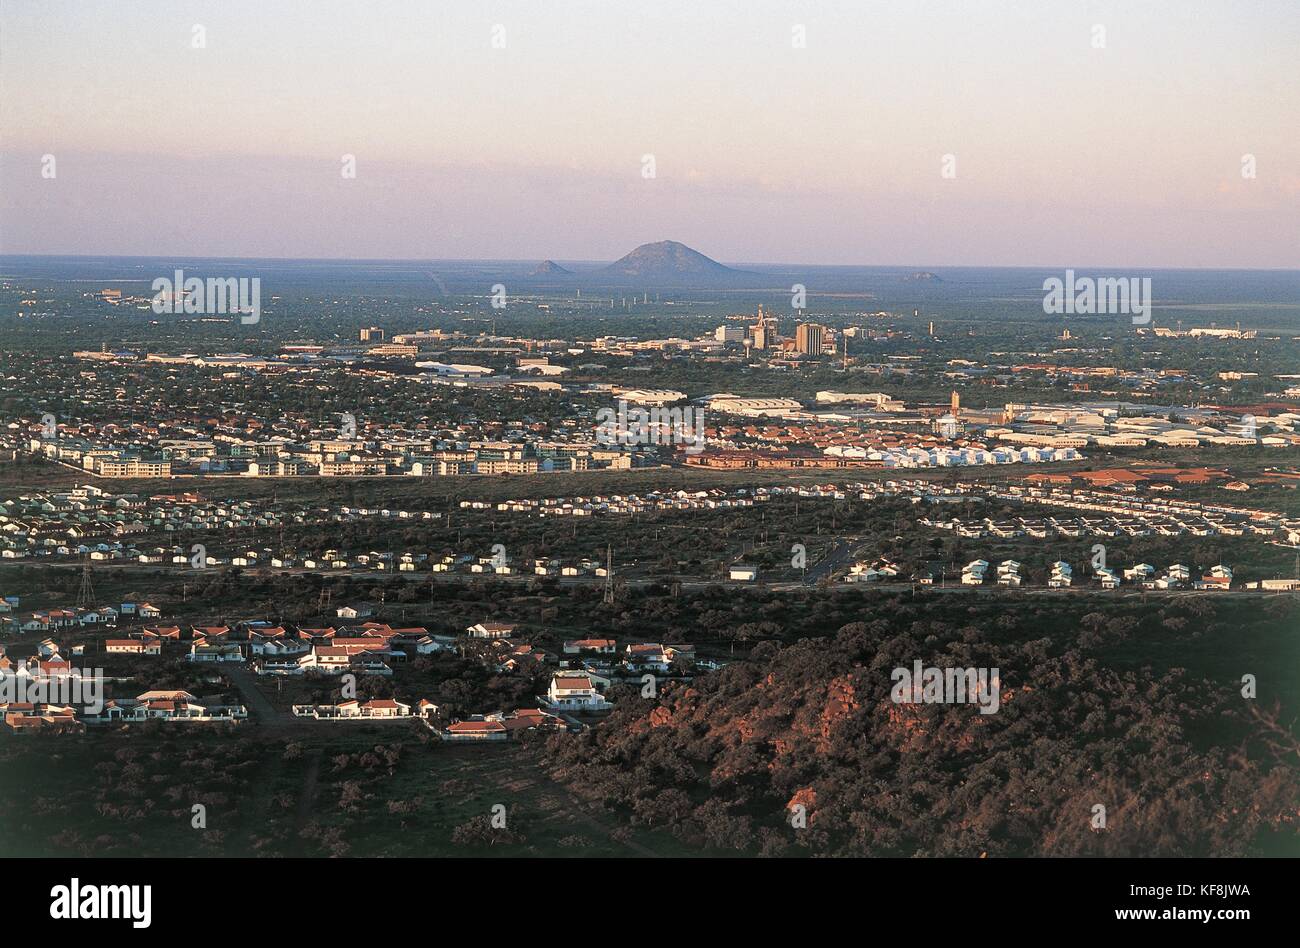 Vue aérienne d'une ville avec une colline en arrière-plan, gabronne, botswana Banque D'Images